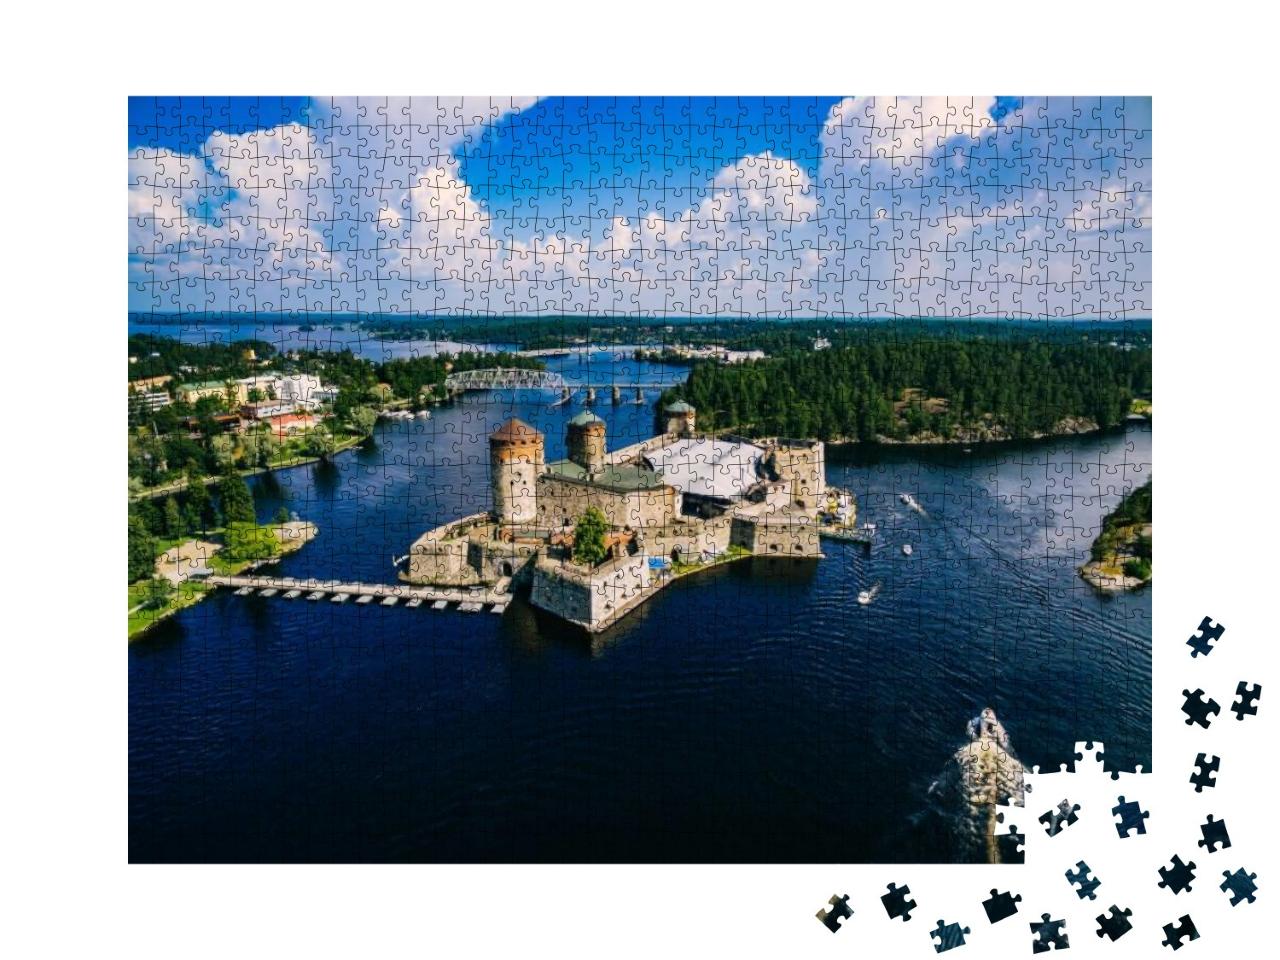 Puzzle 1000 Teile „Mittelalterliche Burg Olavinlinna in Savonlinna, Finnland“